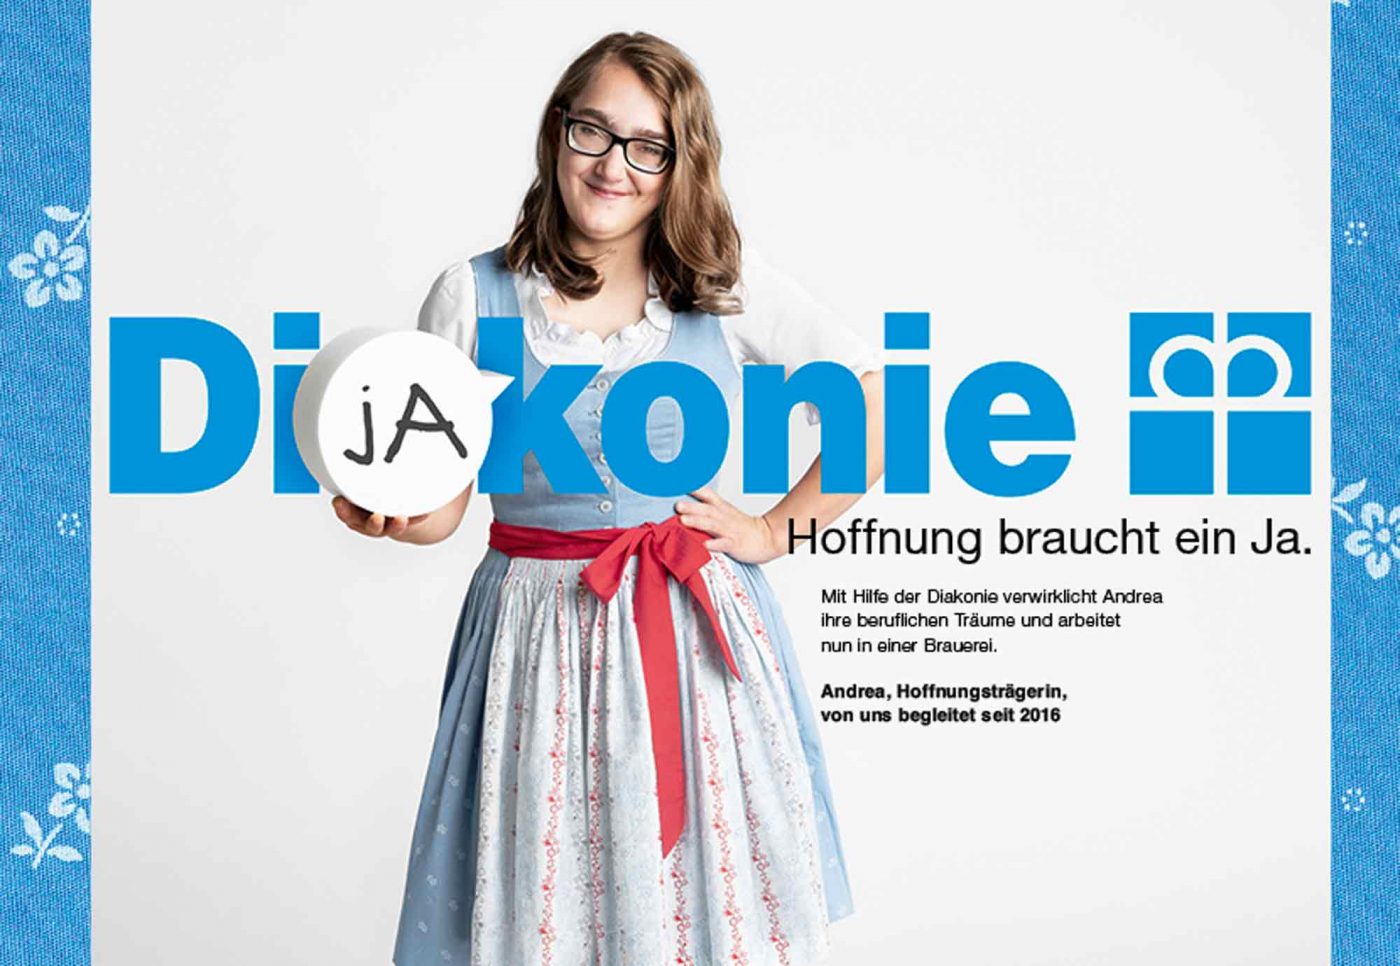 Andrea ist eins der Gesichter der neuen Diakonie-Kampagne. Foto: Diakonie